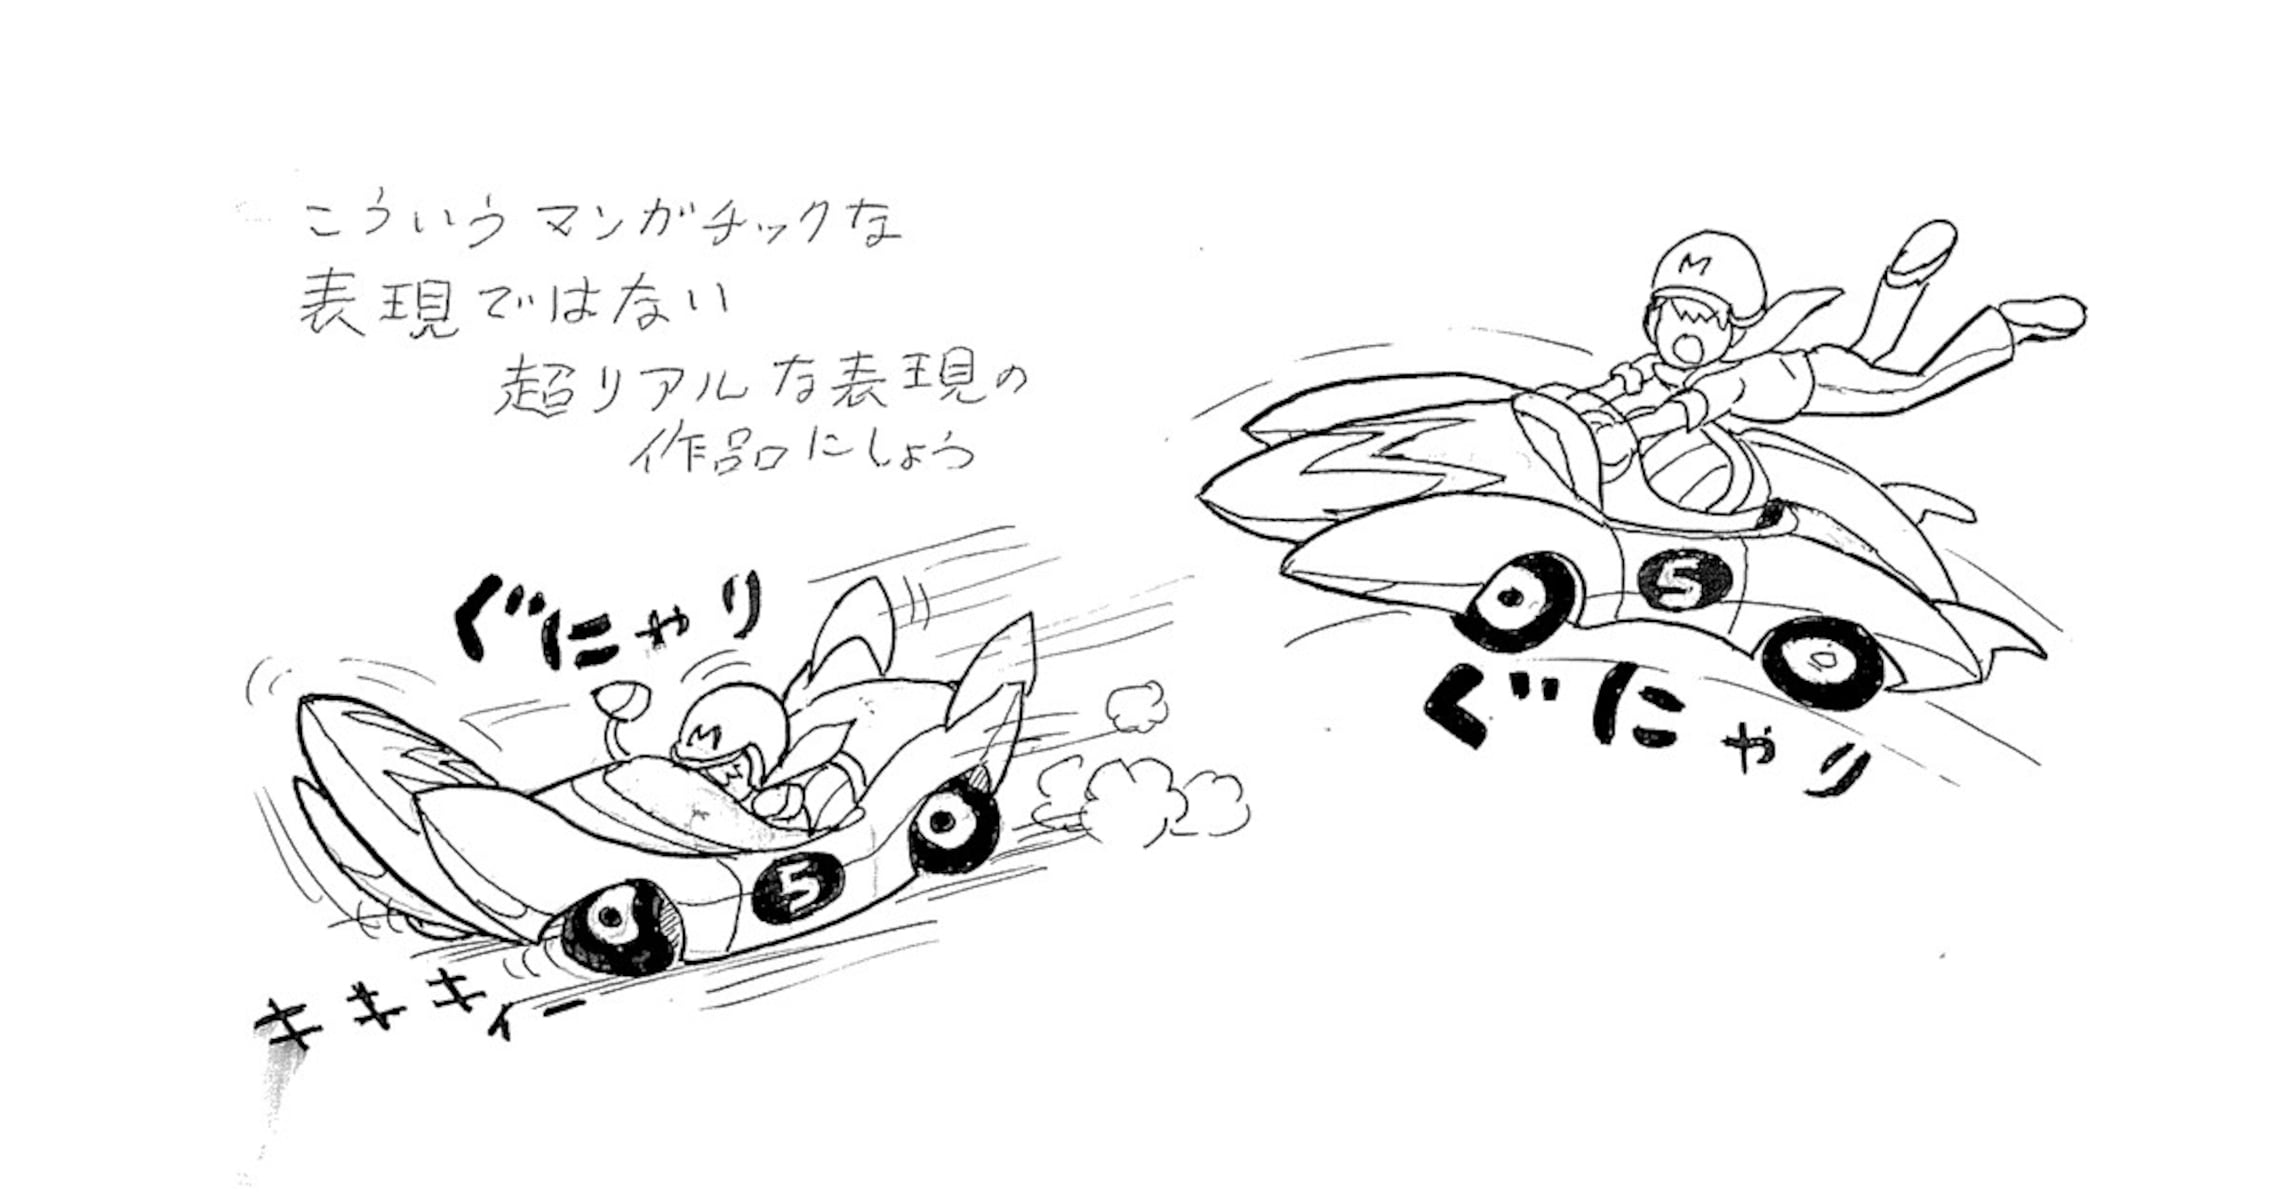 【ヘンなアニメ会社・タツノコプロの秘密】『マッハGoGoGo』が開拓した日本アニメの海外ビジネスモデル